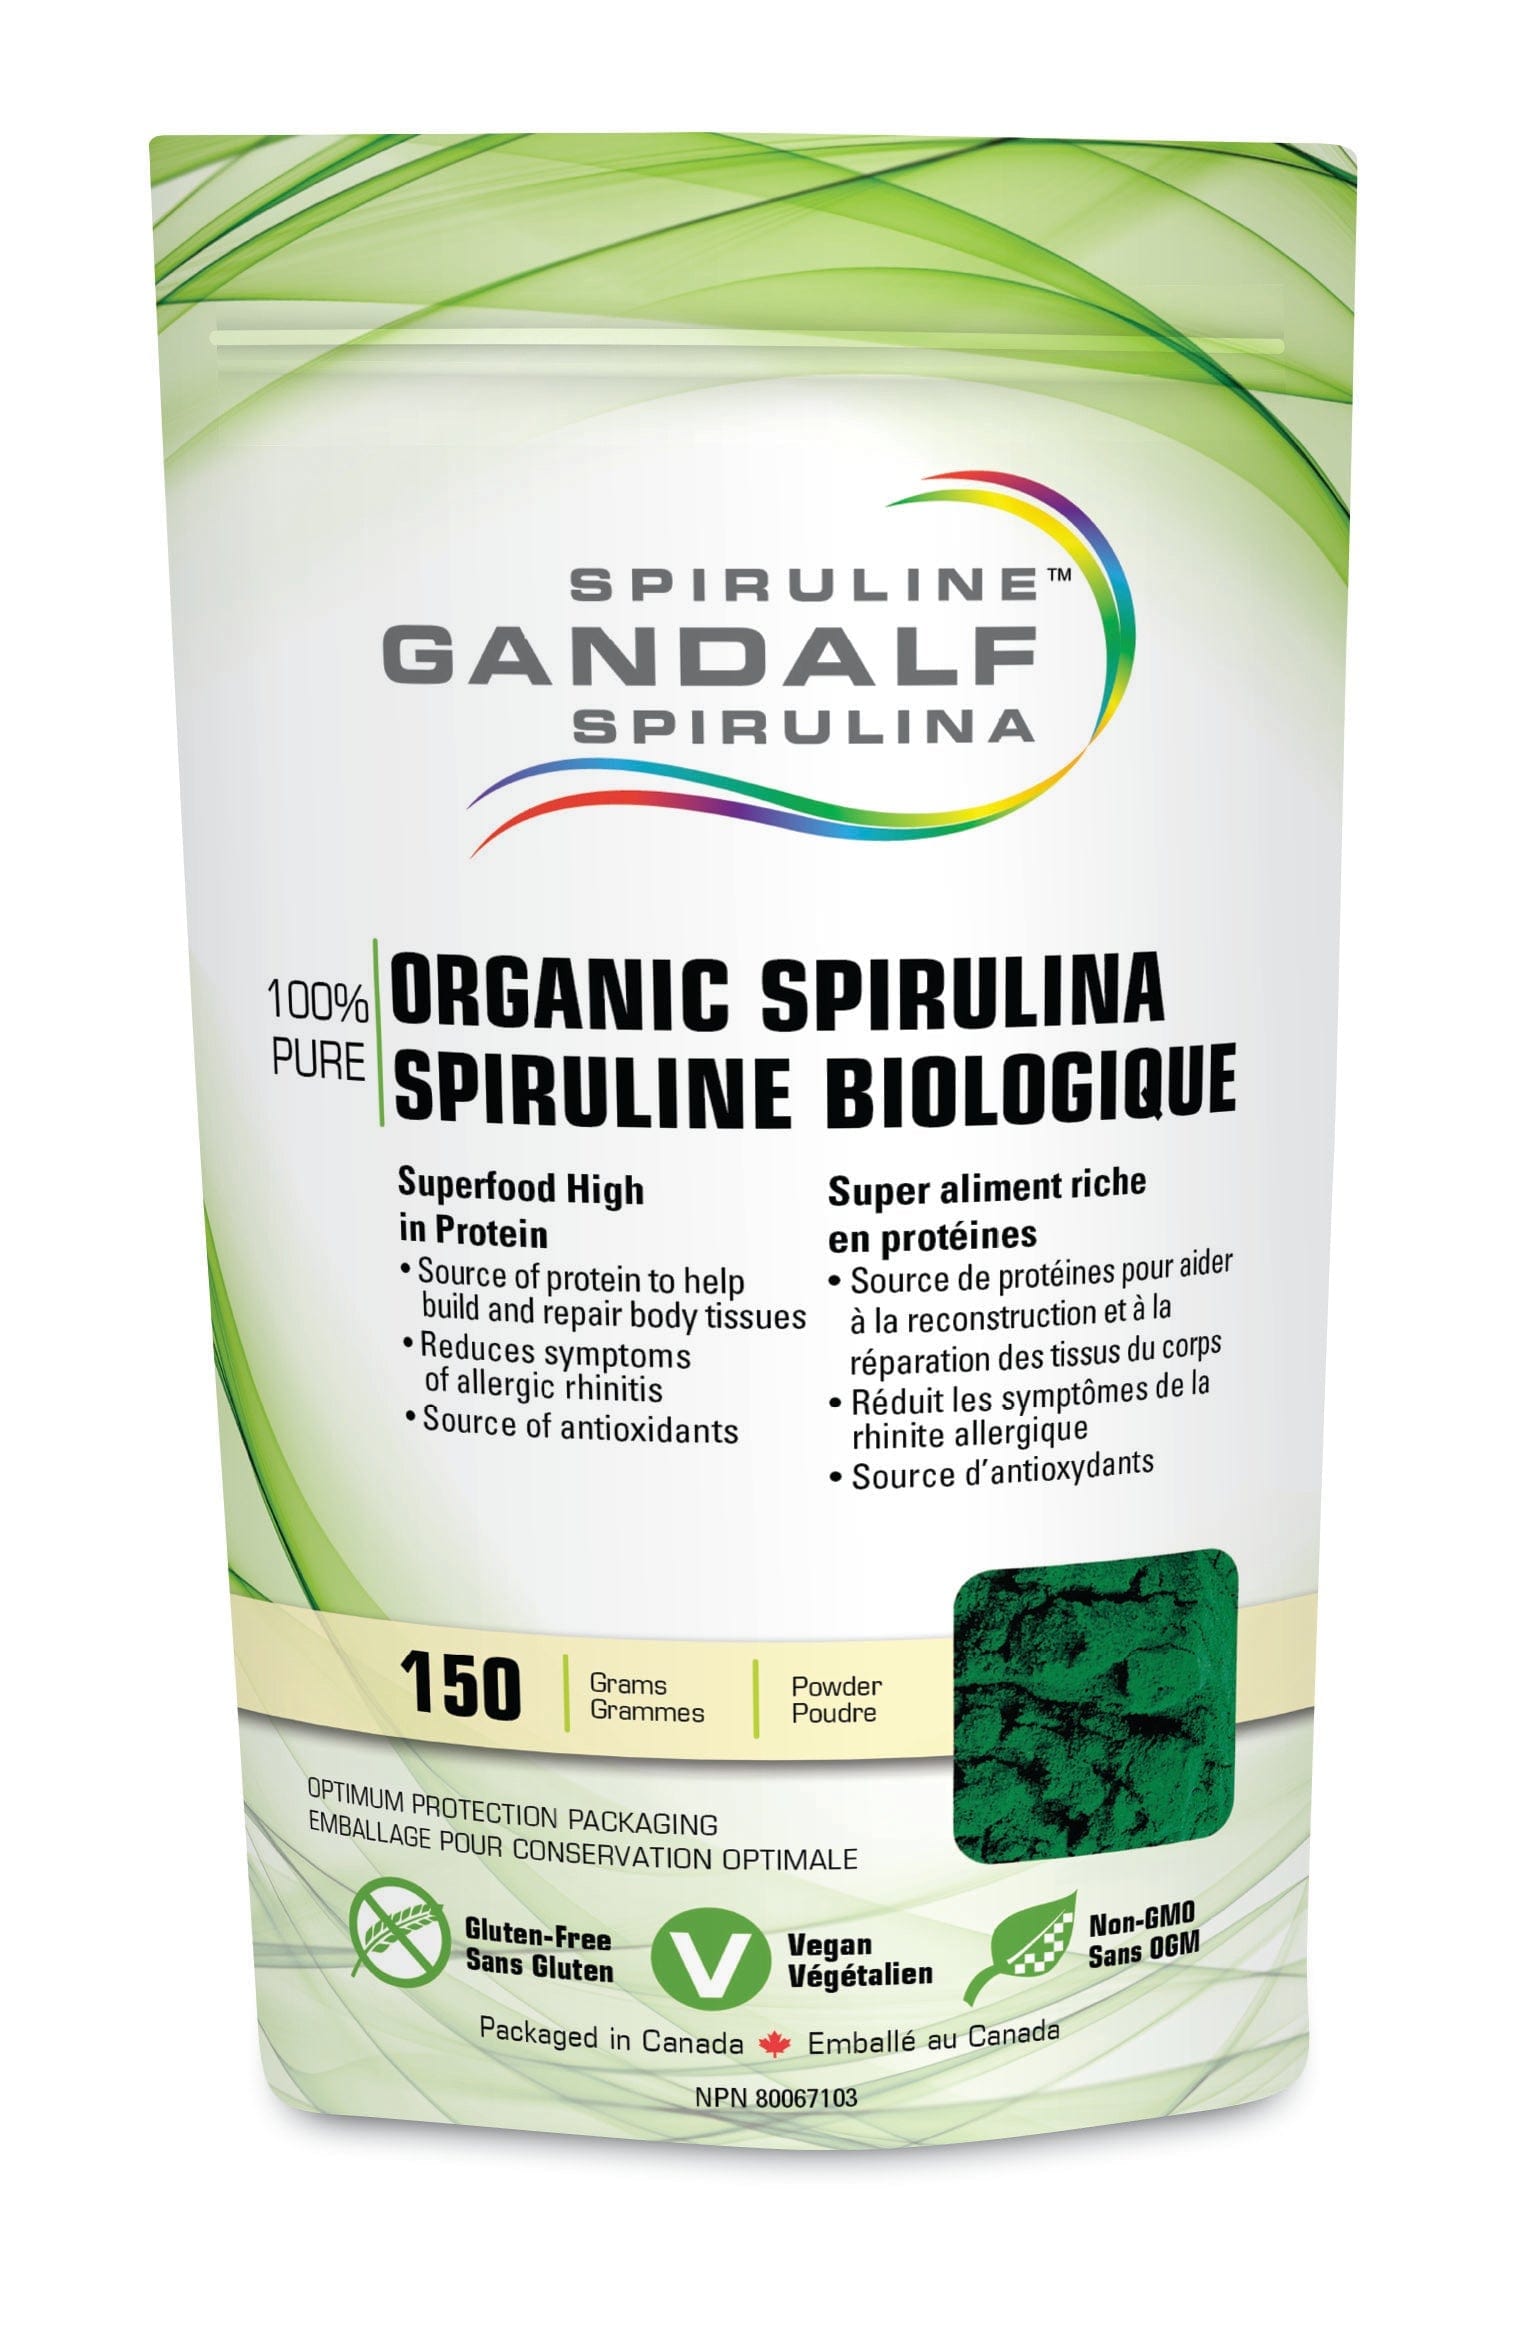 GANDALF Suppléments Spiruline bio sans-gluten / sans-OGM / végétalien 150g